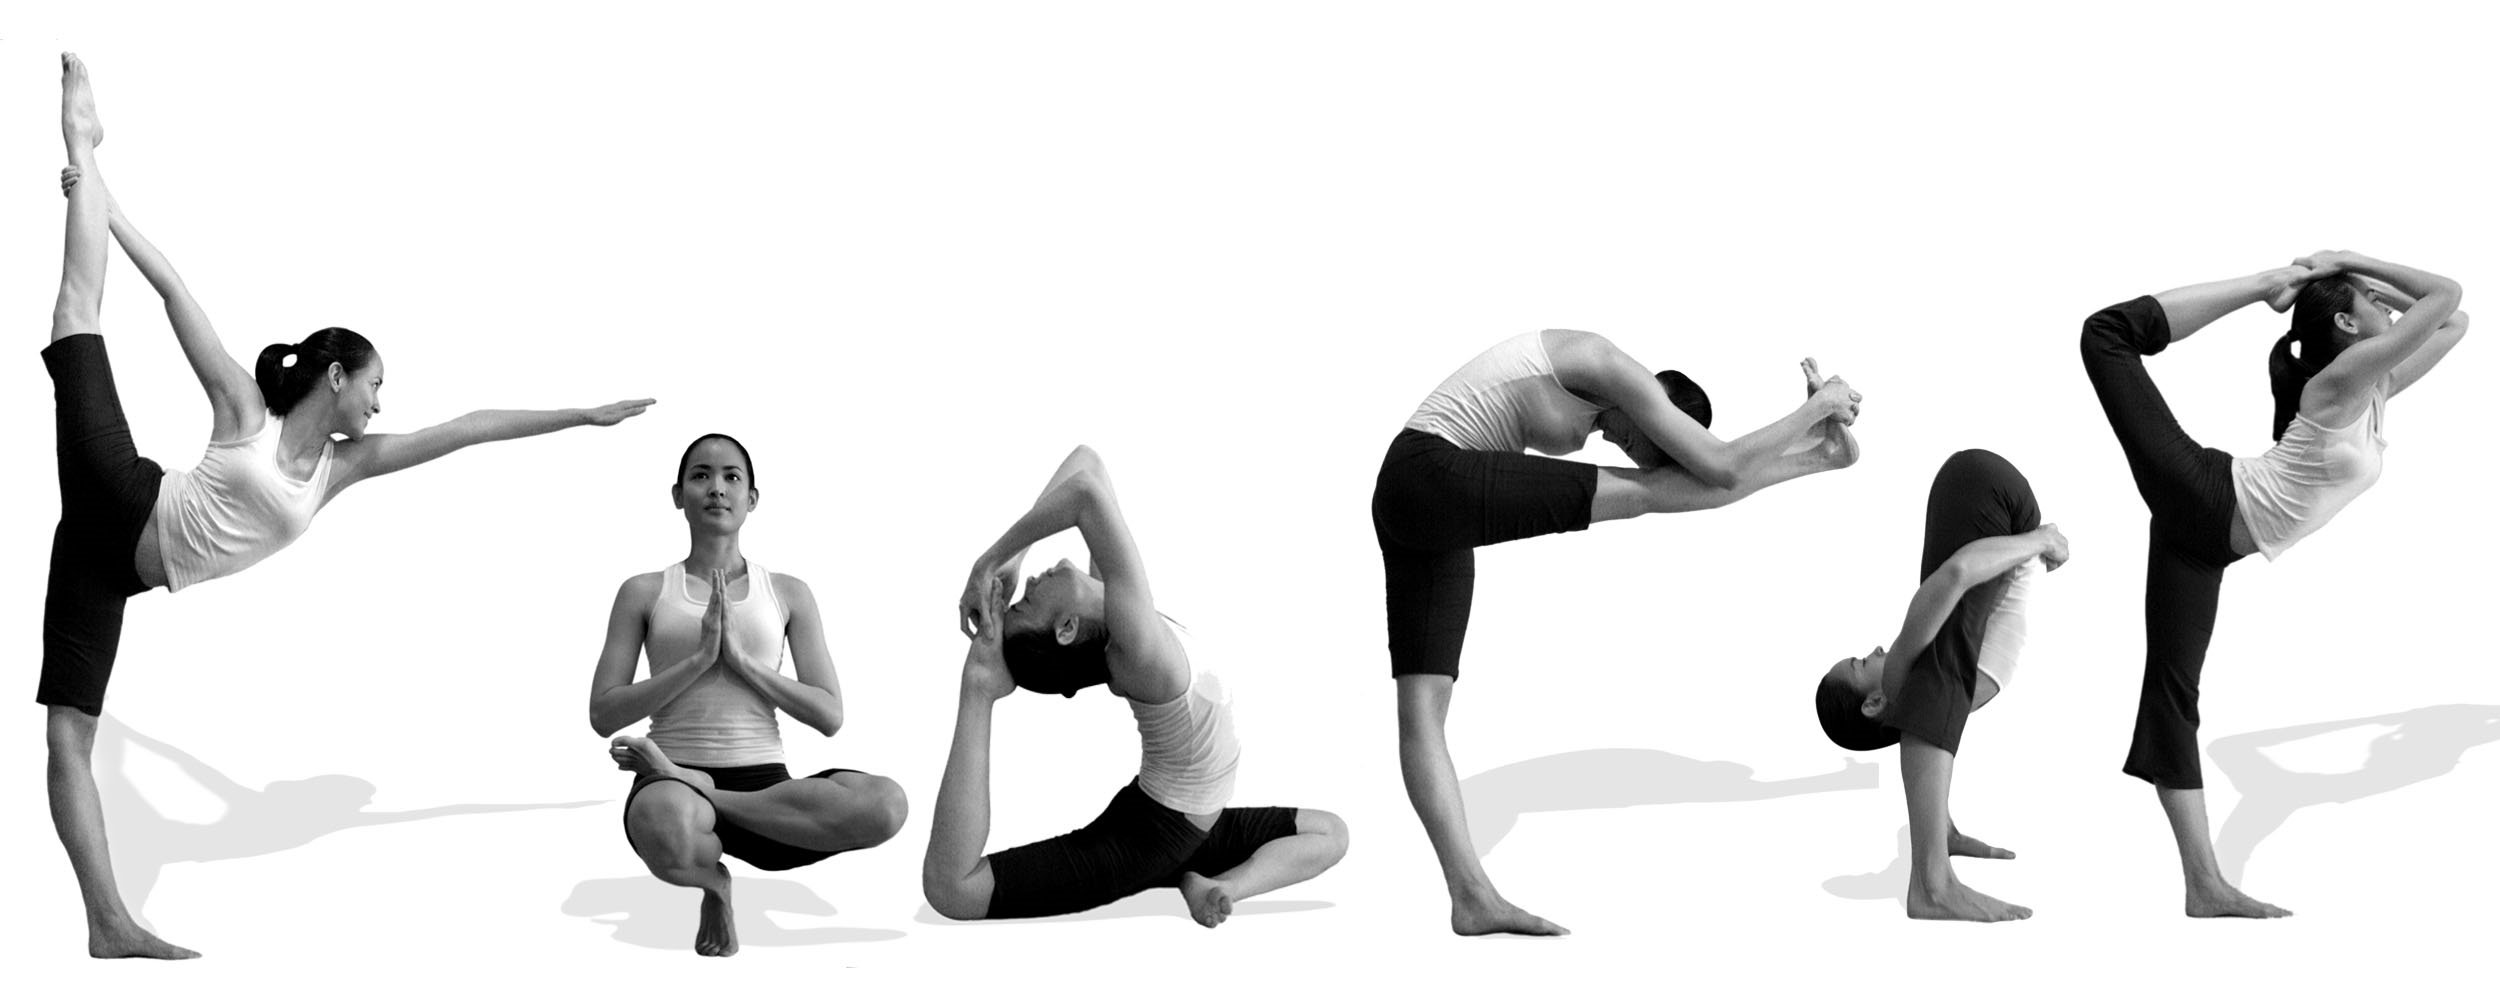 tập yoga có giảm cân không